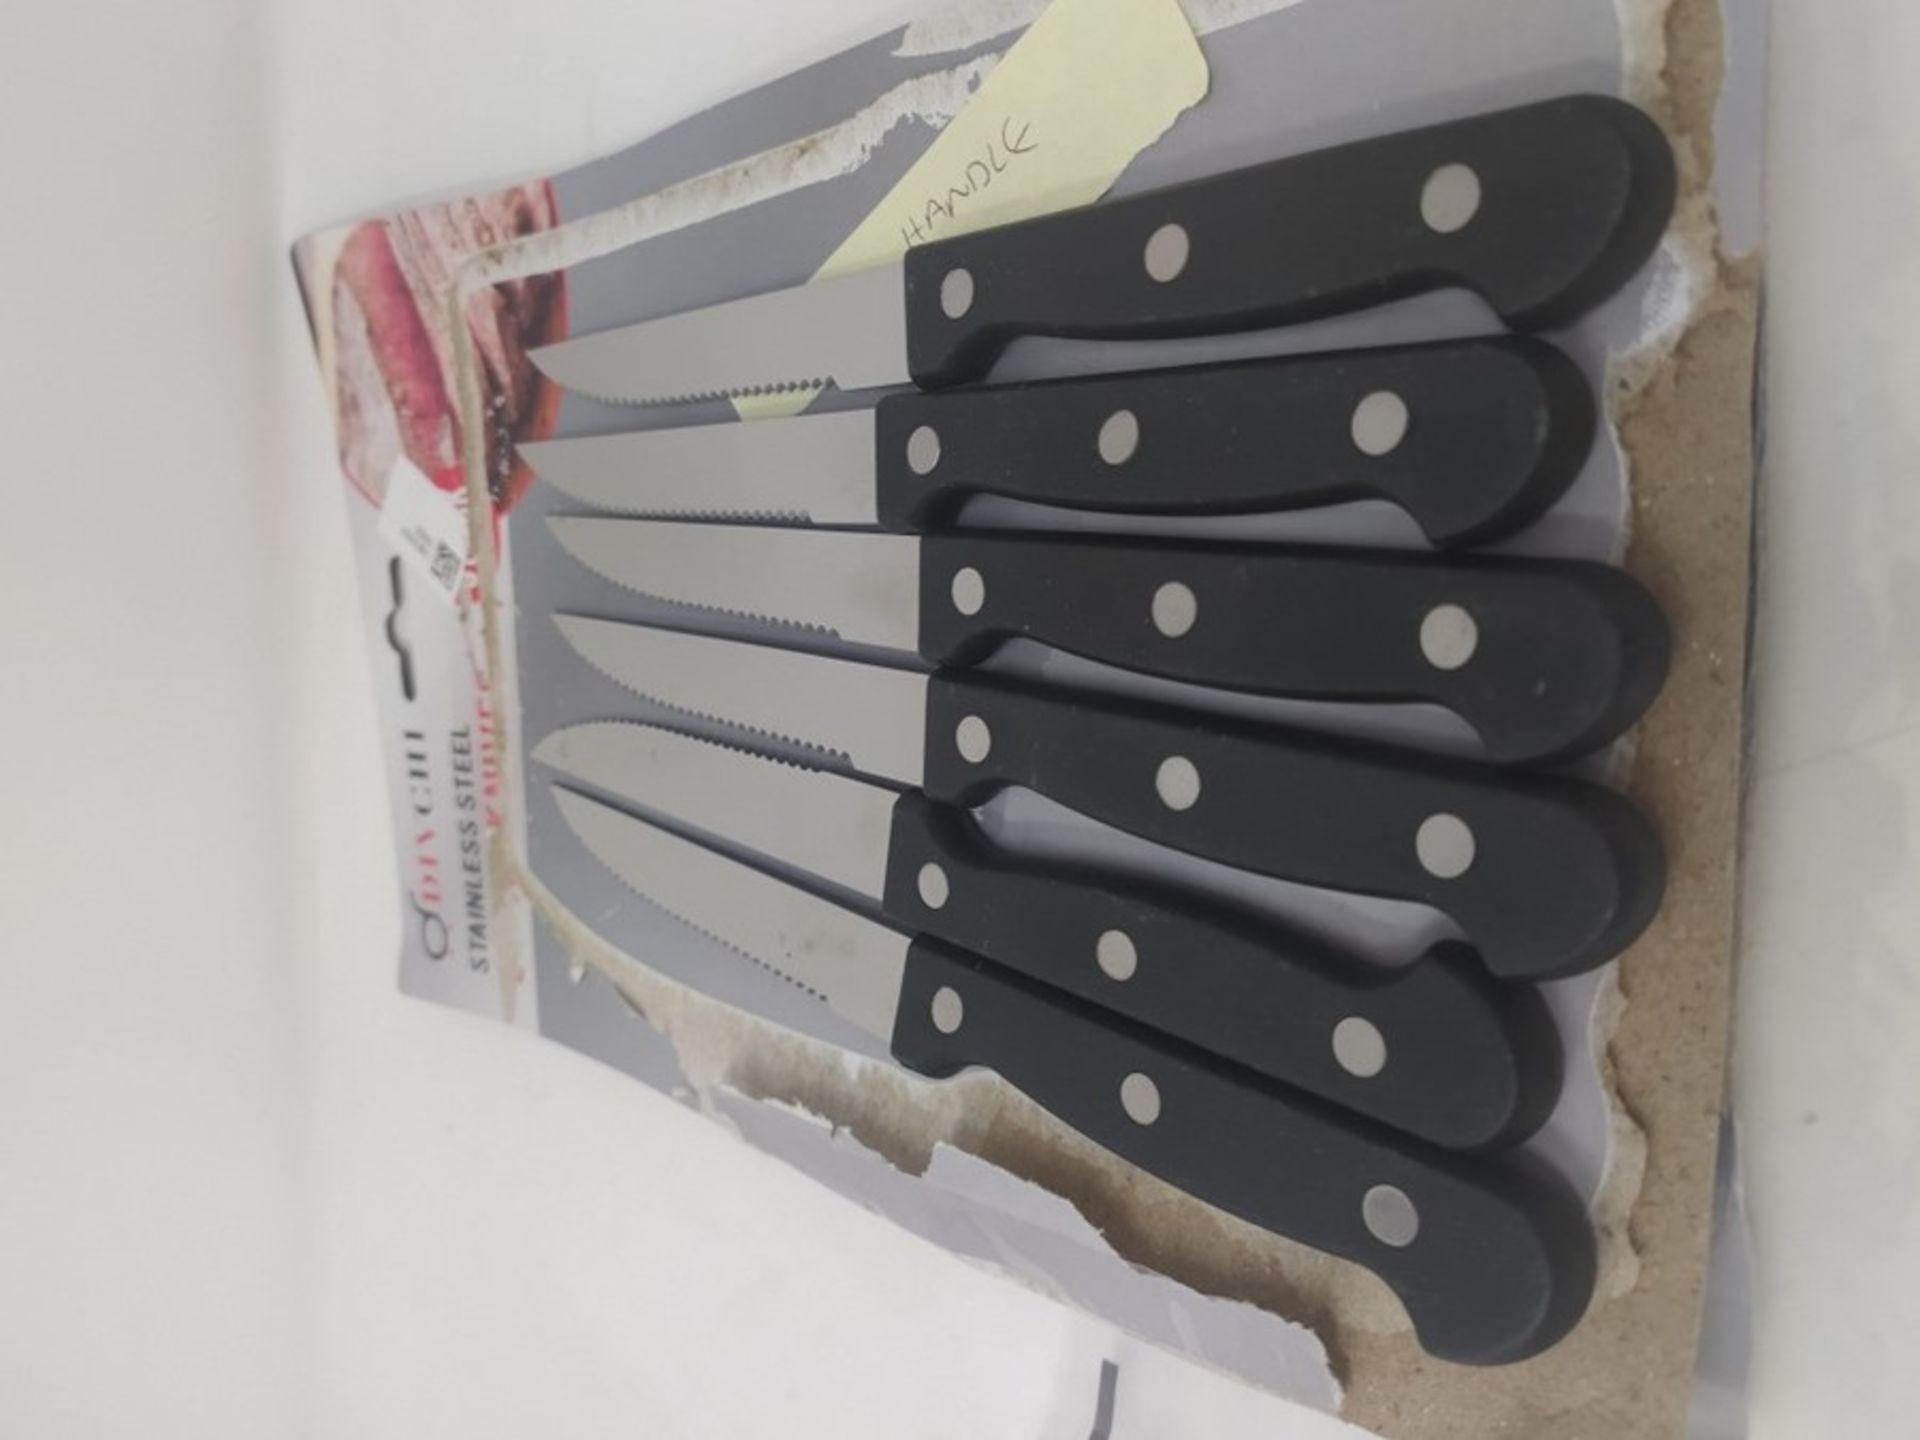 DIVCHI Steak Knives Set of 6 - Steak Knife Set - Serrated Steak Knives Dishwasher Safe - Image 4 of 4